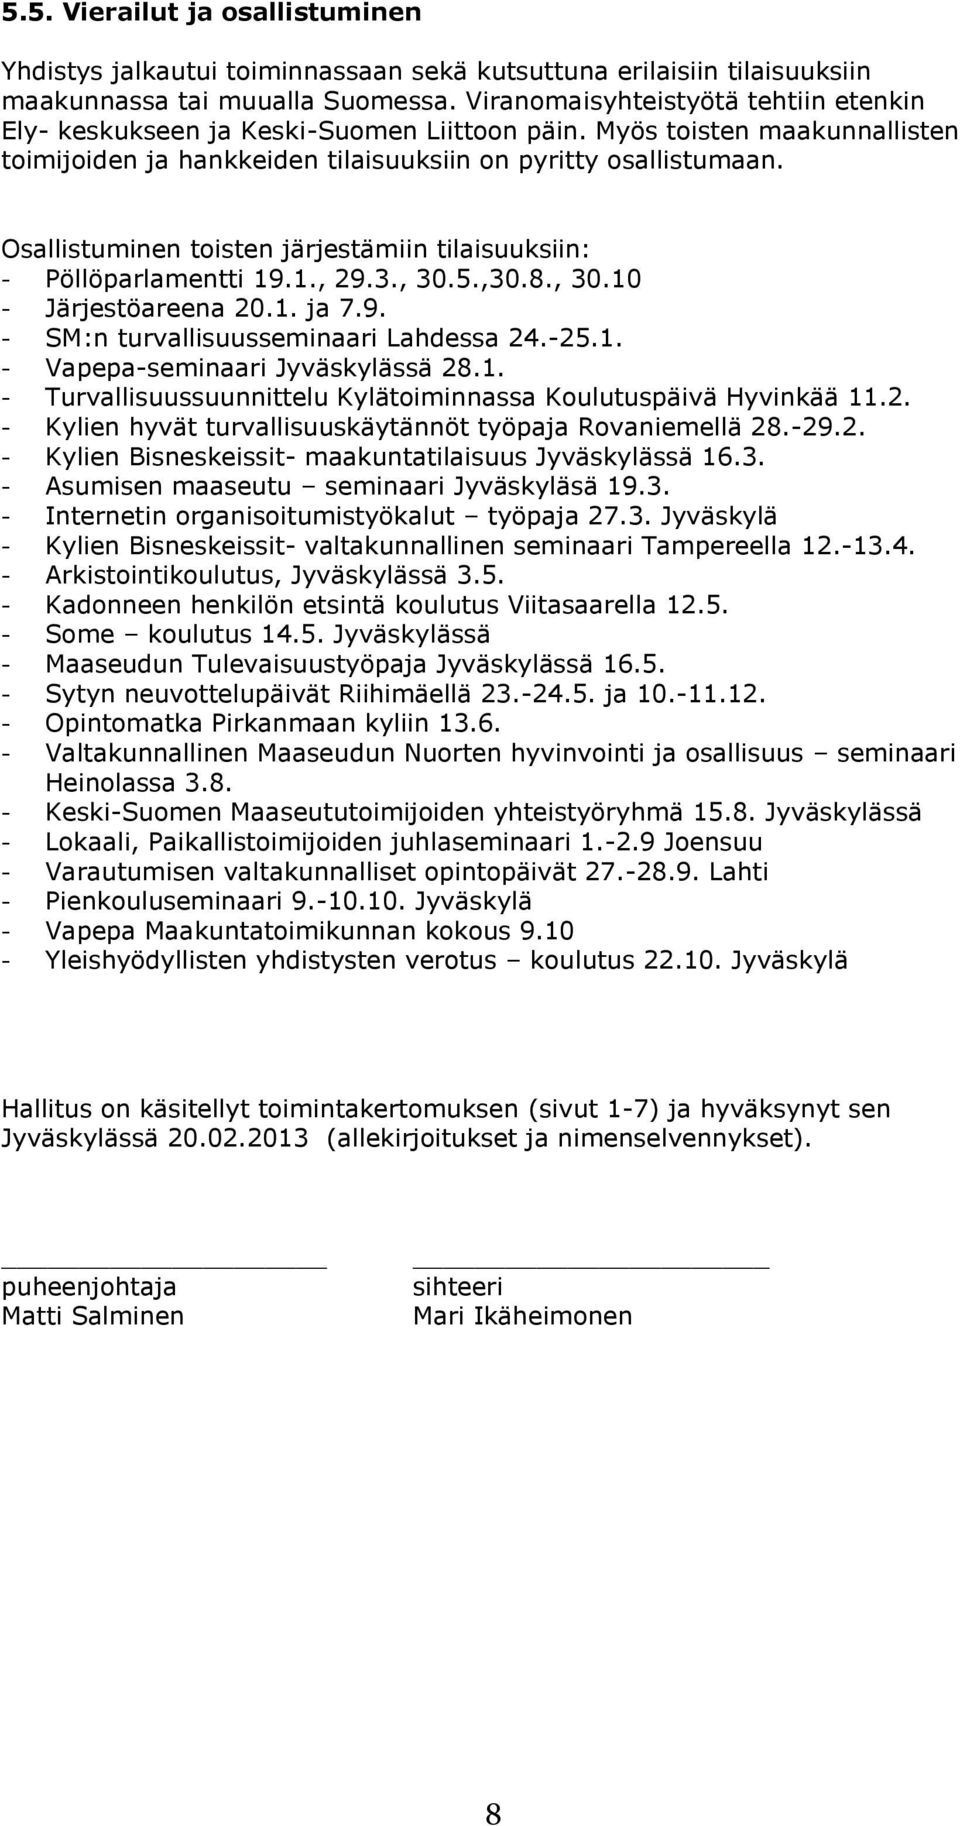 Osallistuminen toisten järjestämiin tilaisuuksiin: - Pöllöparlamentti 19.1., 29.3., 30.5.,30.8., 30.10 - Järjestöareena 20.1. ja 7.9. - SM:n turvallisuusseminaari Lahdessa 24.-25.1. - Vapepa-seminaari Jyväskylässä 28.